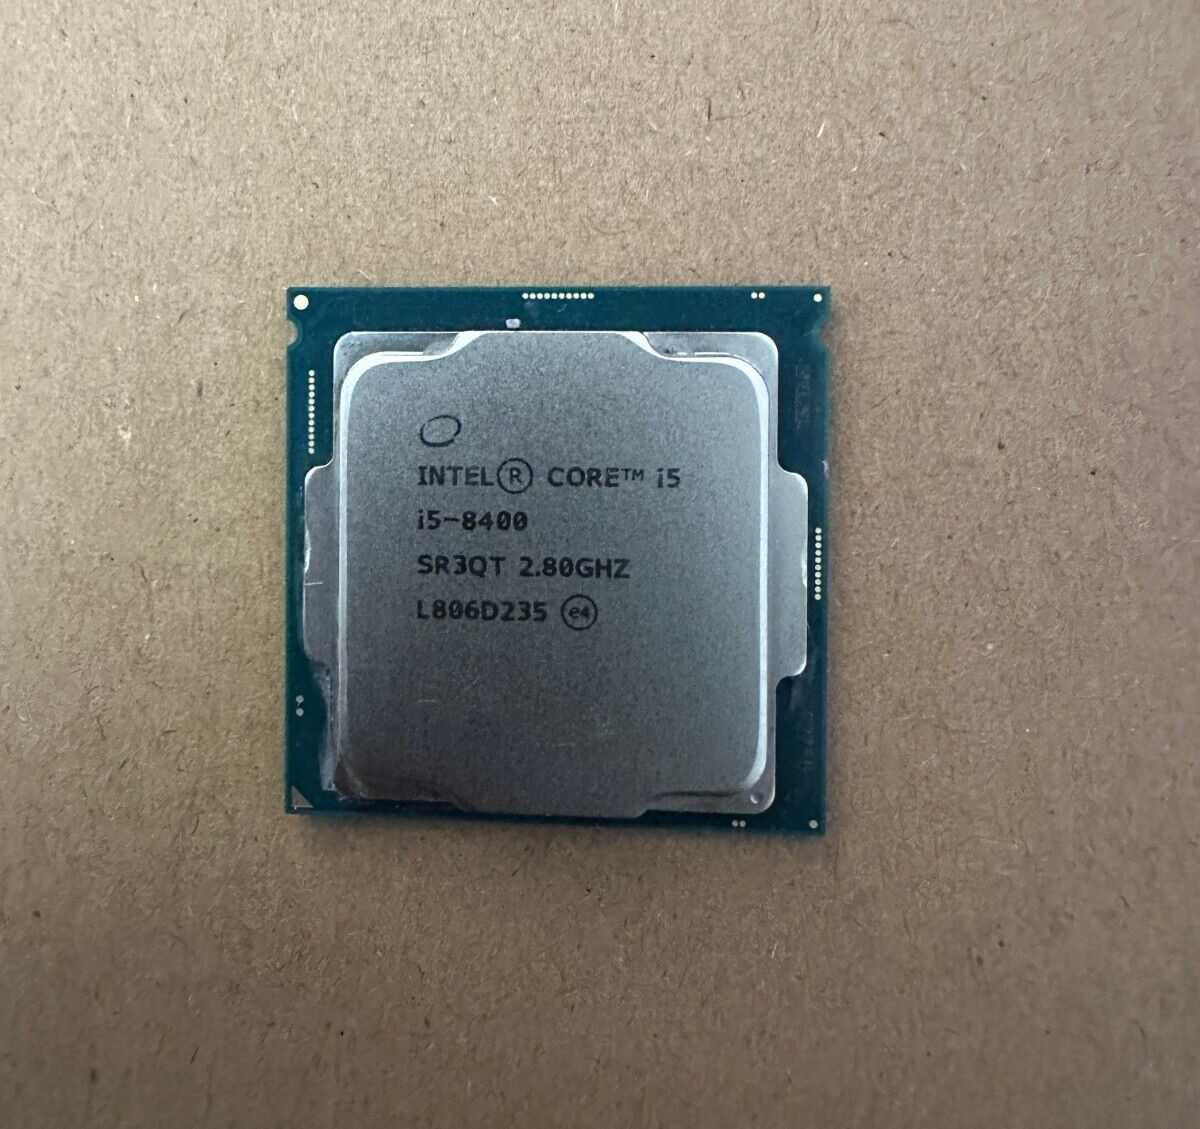 SR3QT - Intel Core i5-8400 2.8 GHz CPU 9MB SmartCache LGA 1151 Processor